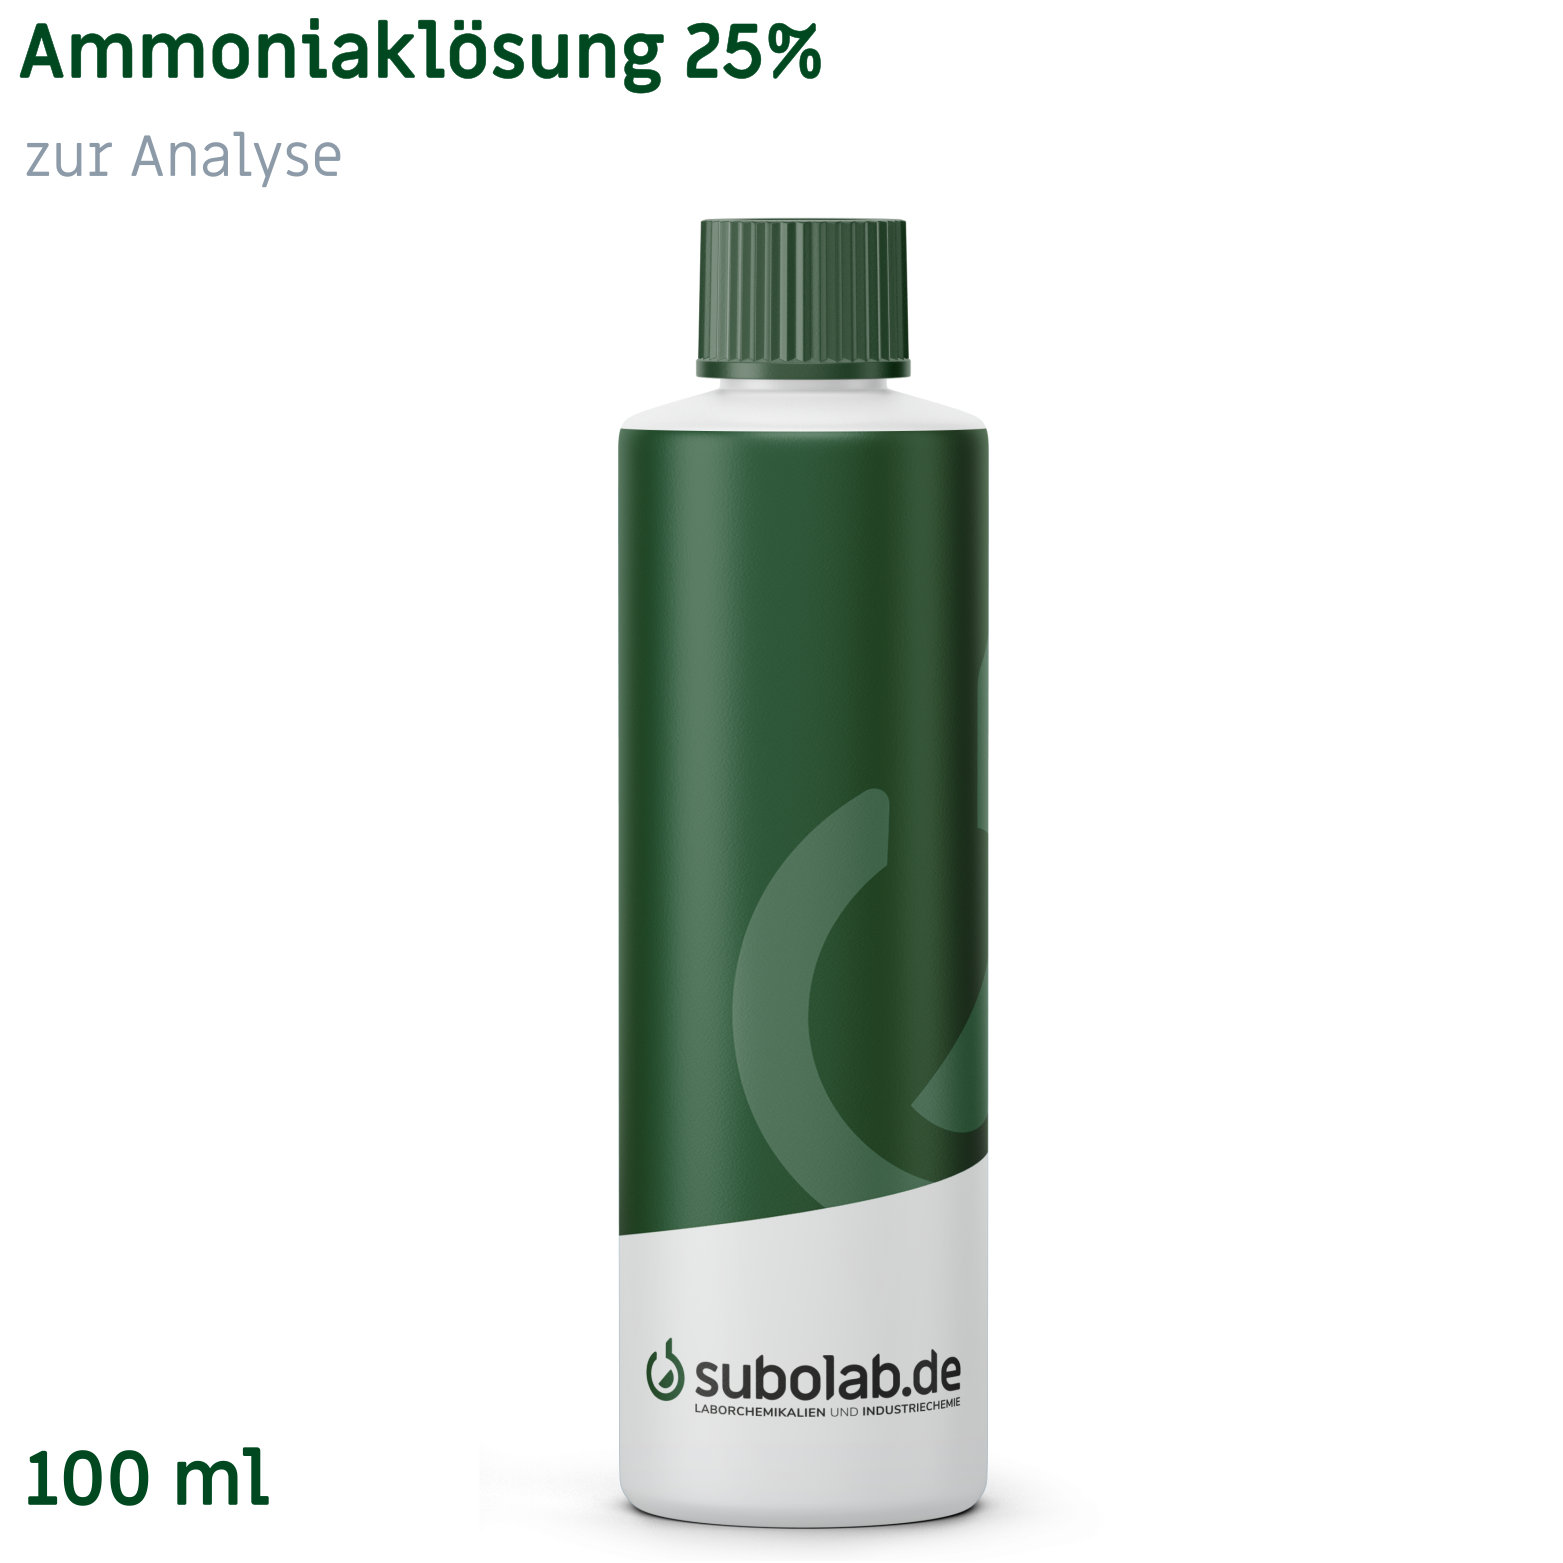 Bild von Ammoniaklösung 25% zur Analyse (100 ml)